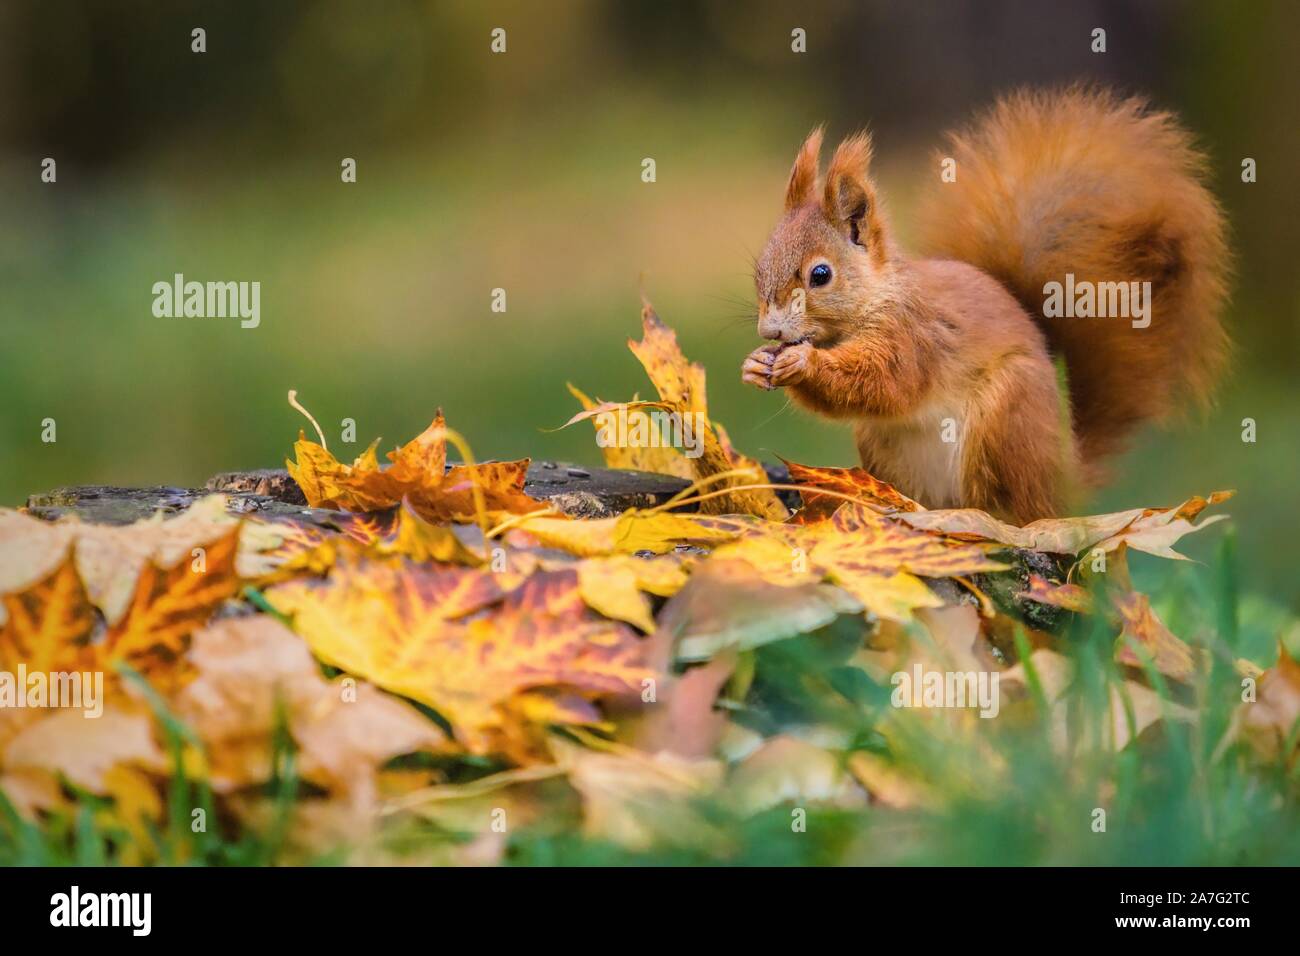 Eurasienne red squirrel avec queue pelucheuse assis sur une souche d'arbre couverts de feuilles colorées qui se nourrissent de graines. La journée ensoleillée d'automne dans une forêt profonde. Banque D'Images